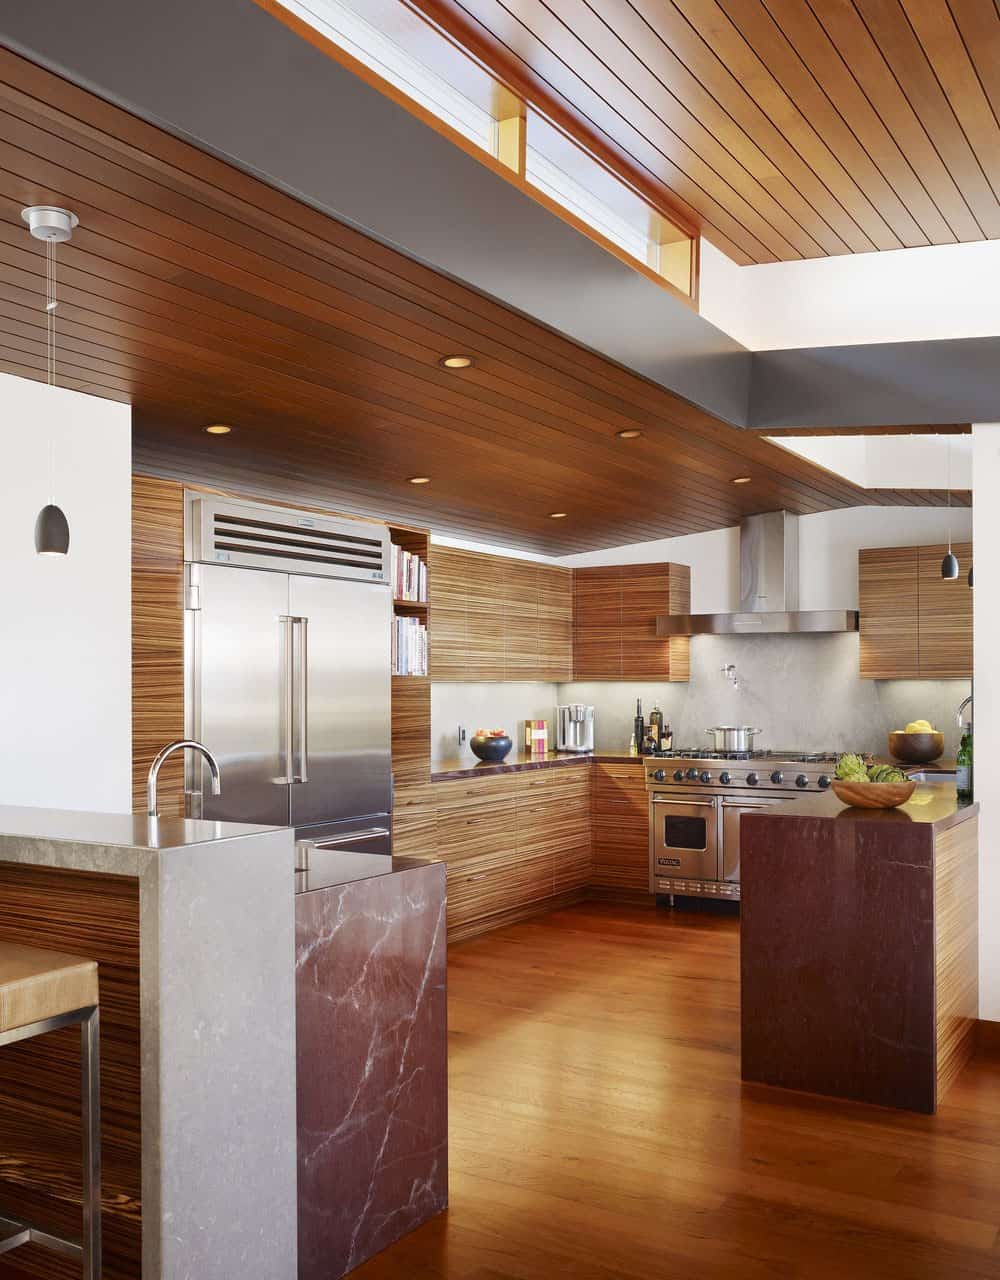 balinese-inspired-kitchen